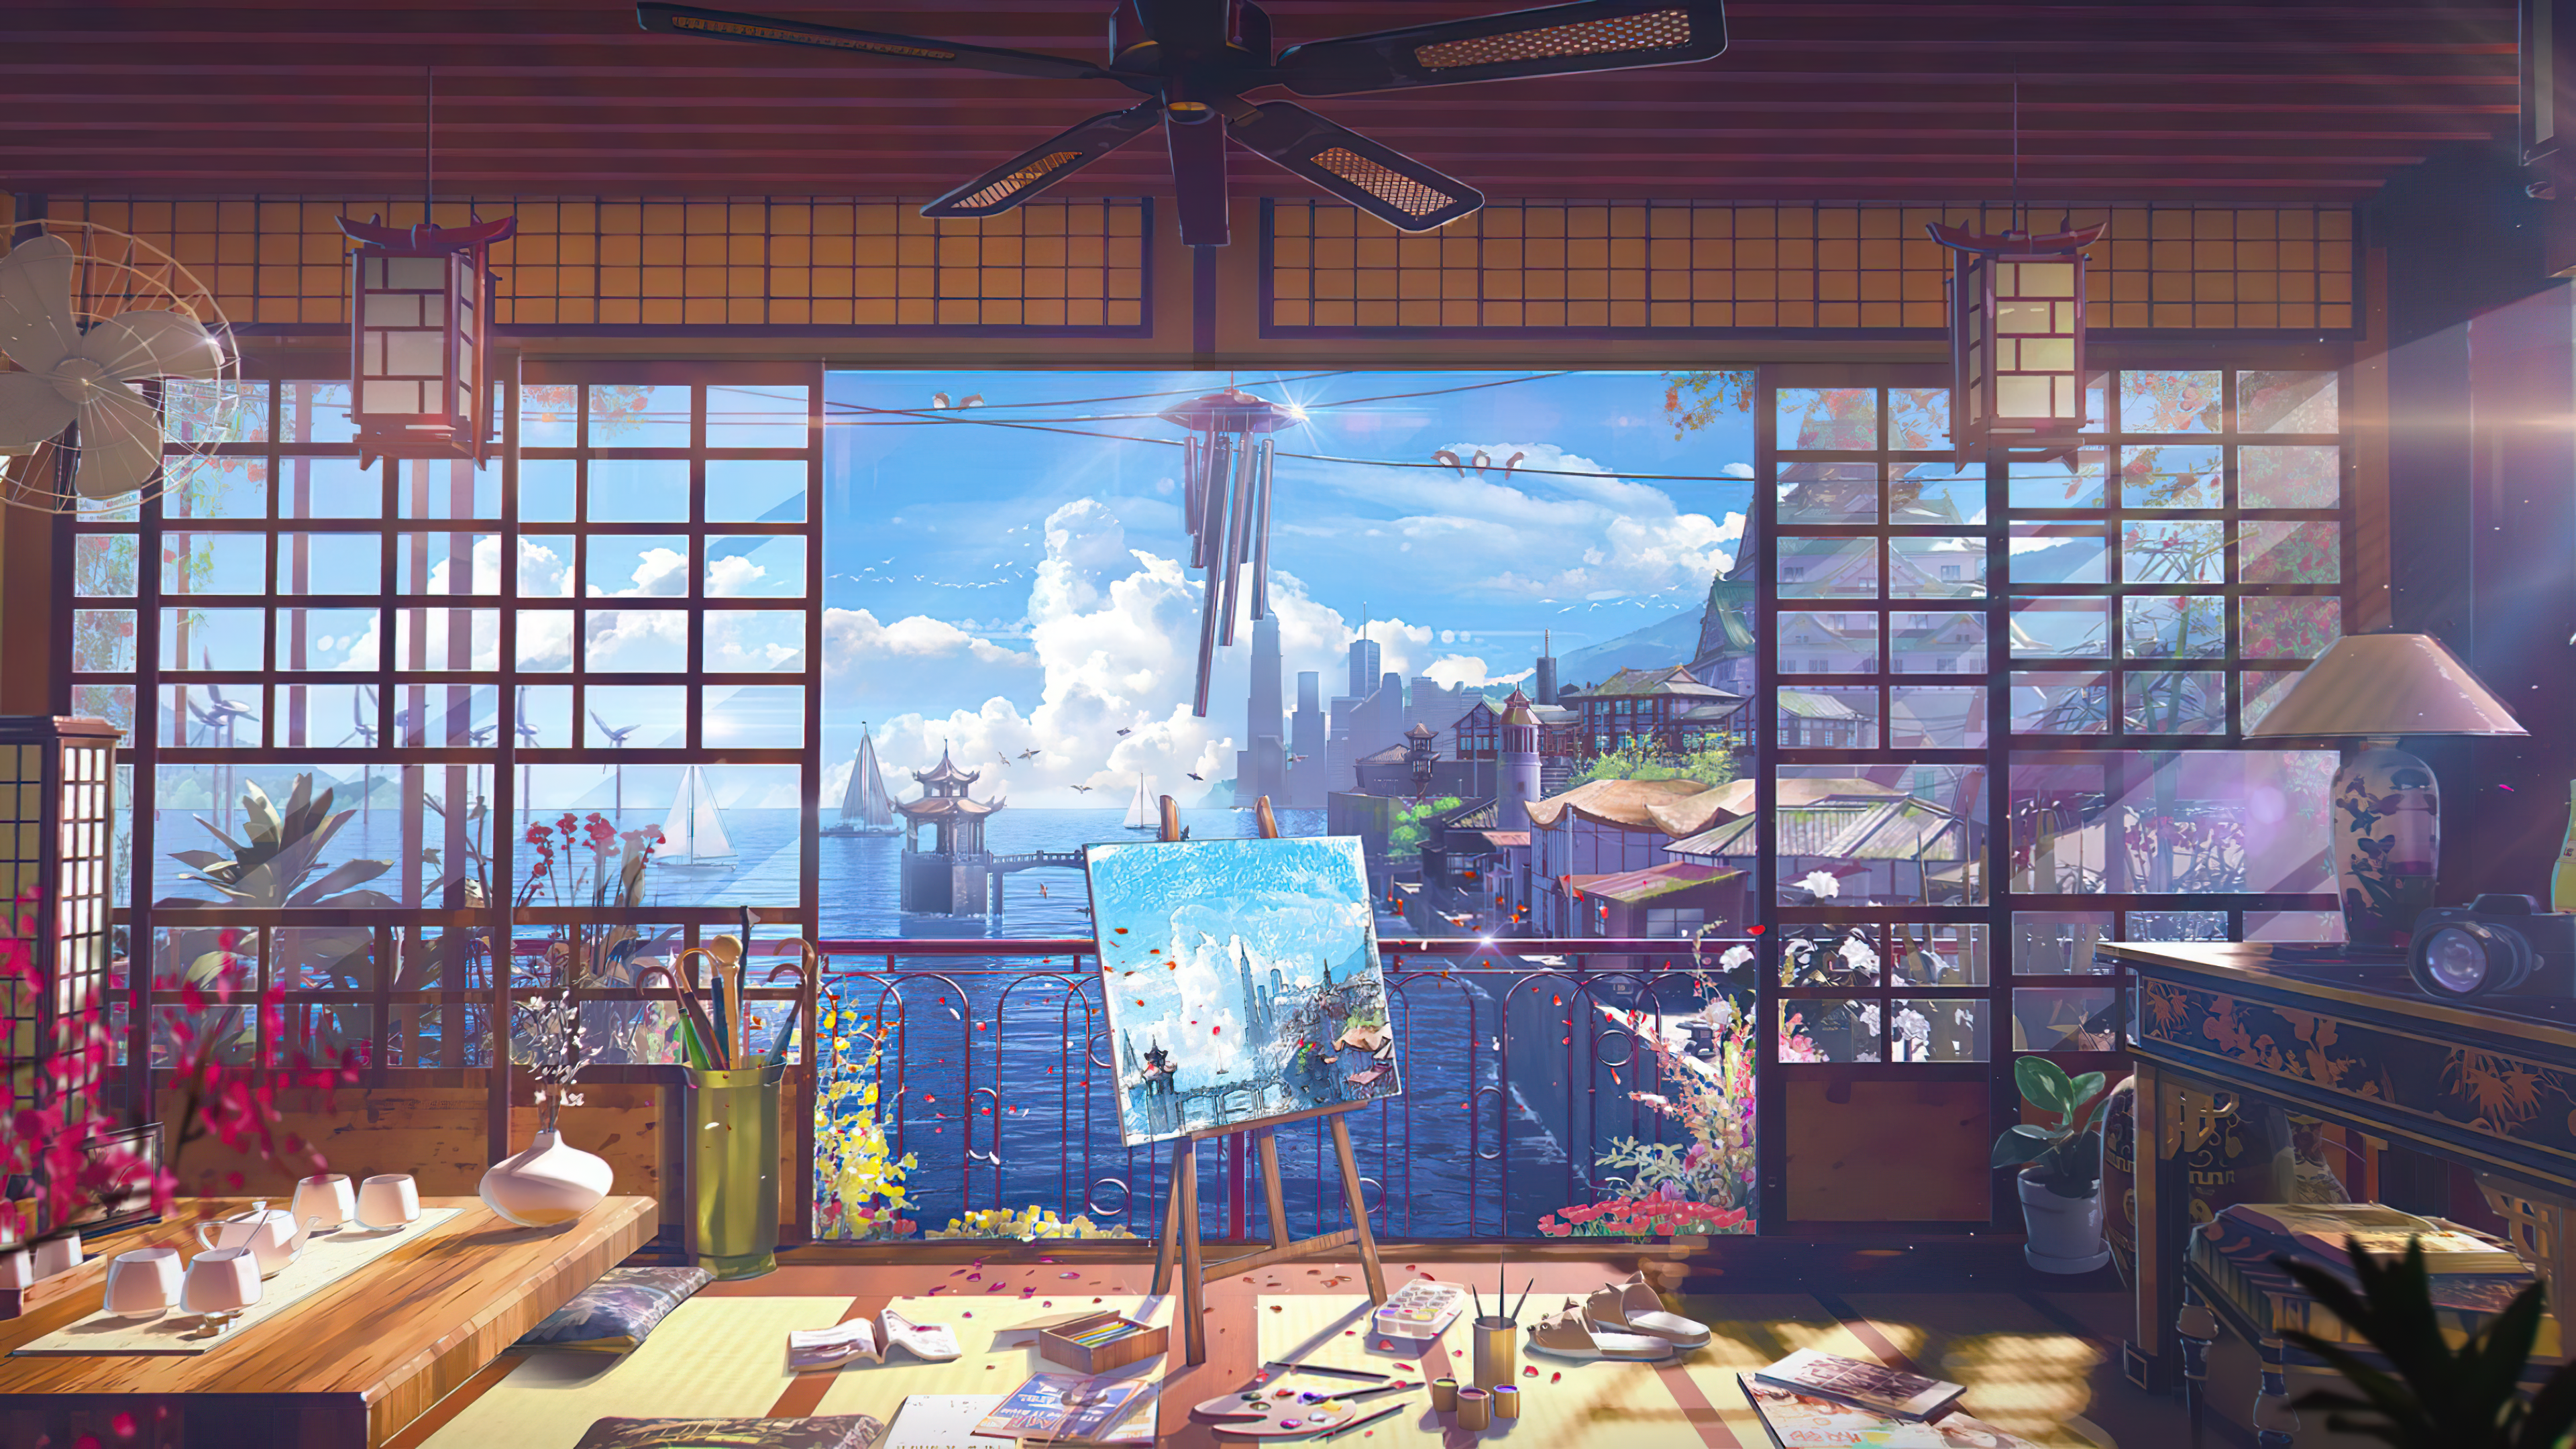 ArtStation - Anime Style Futuristic Room